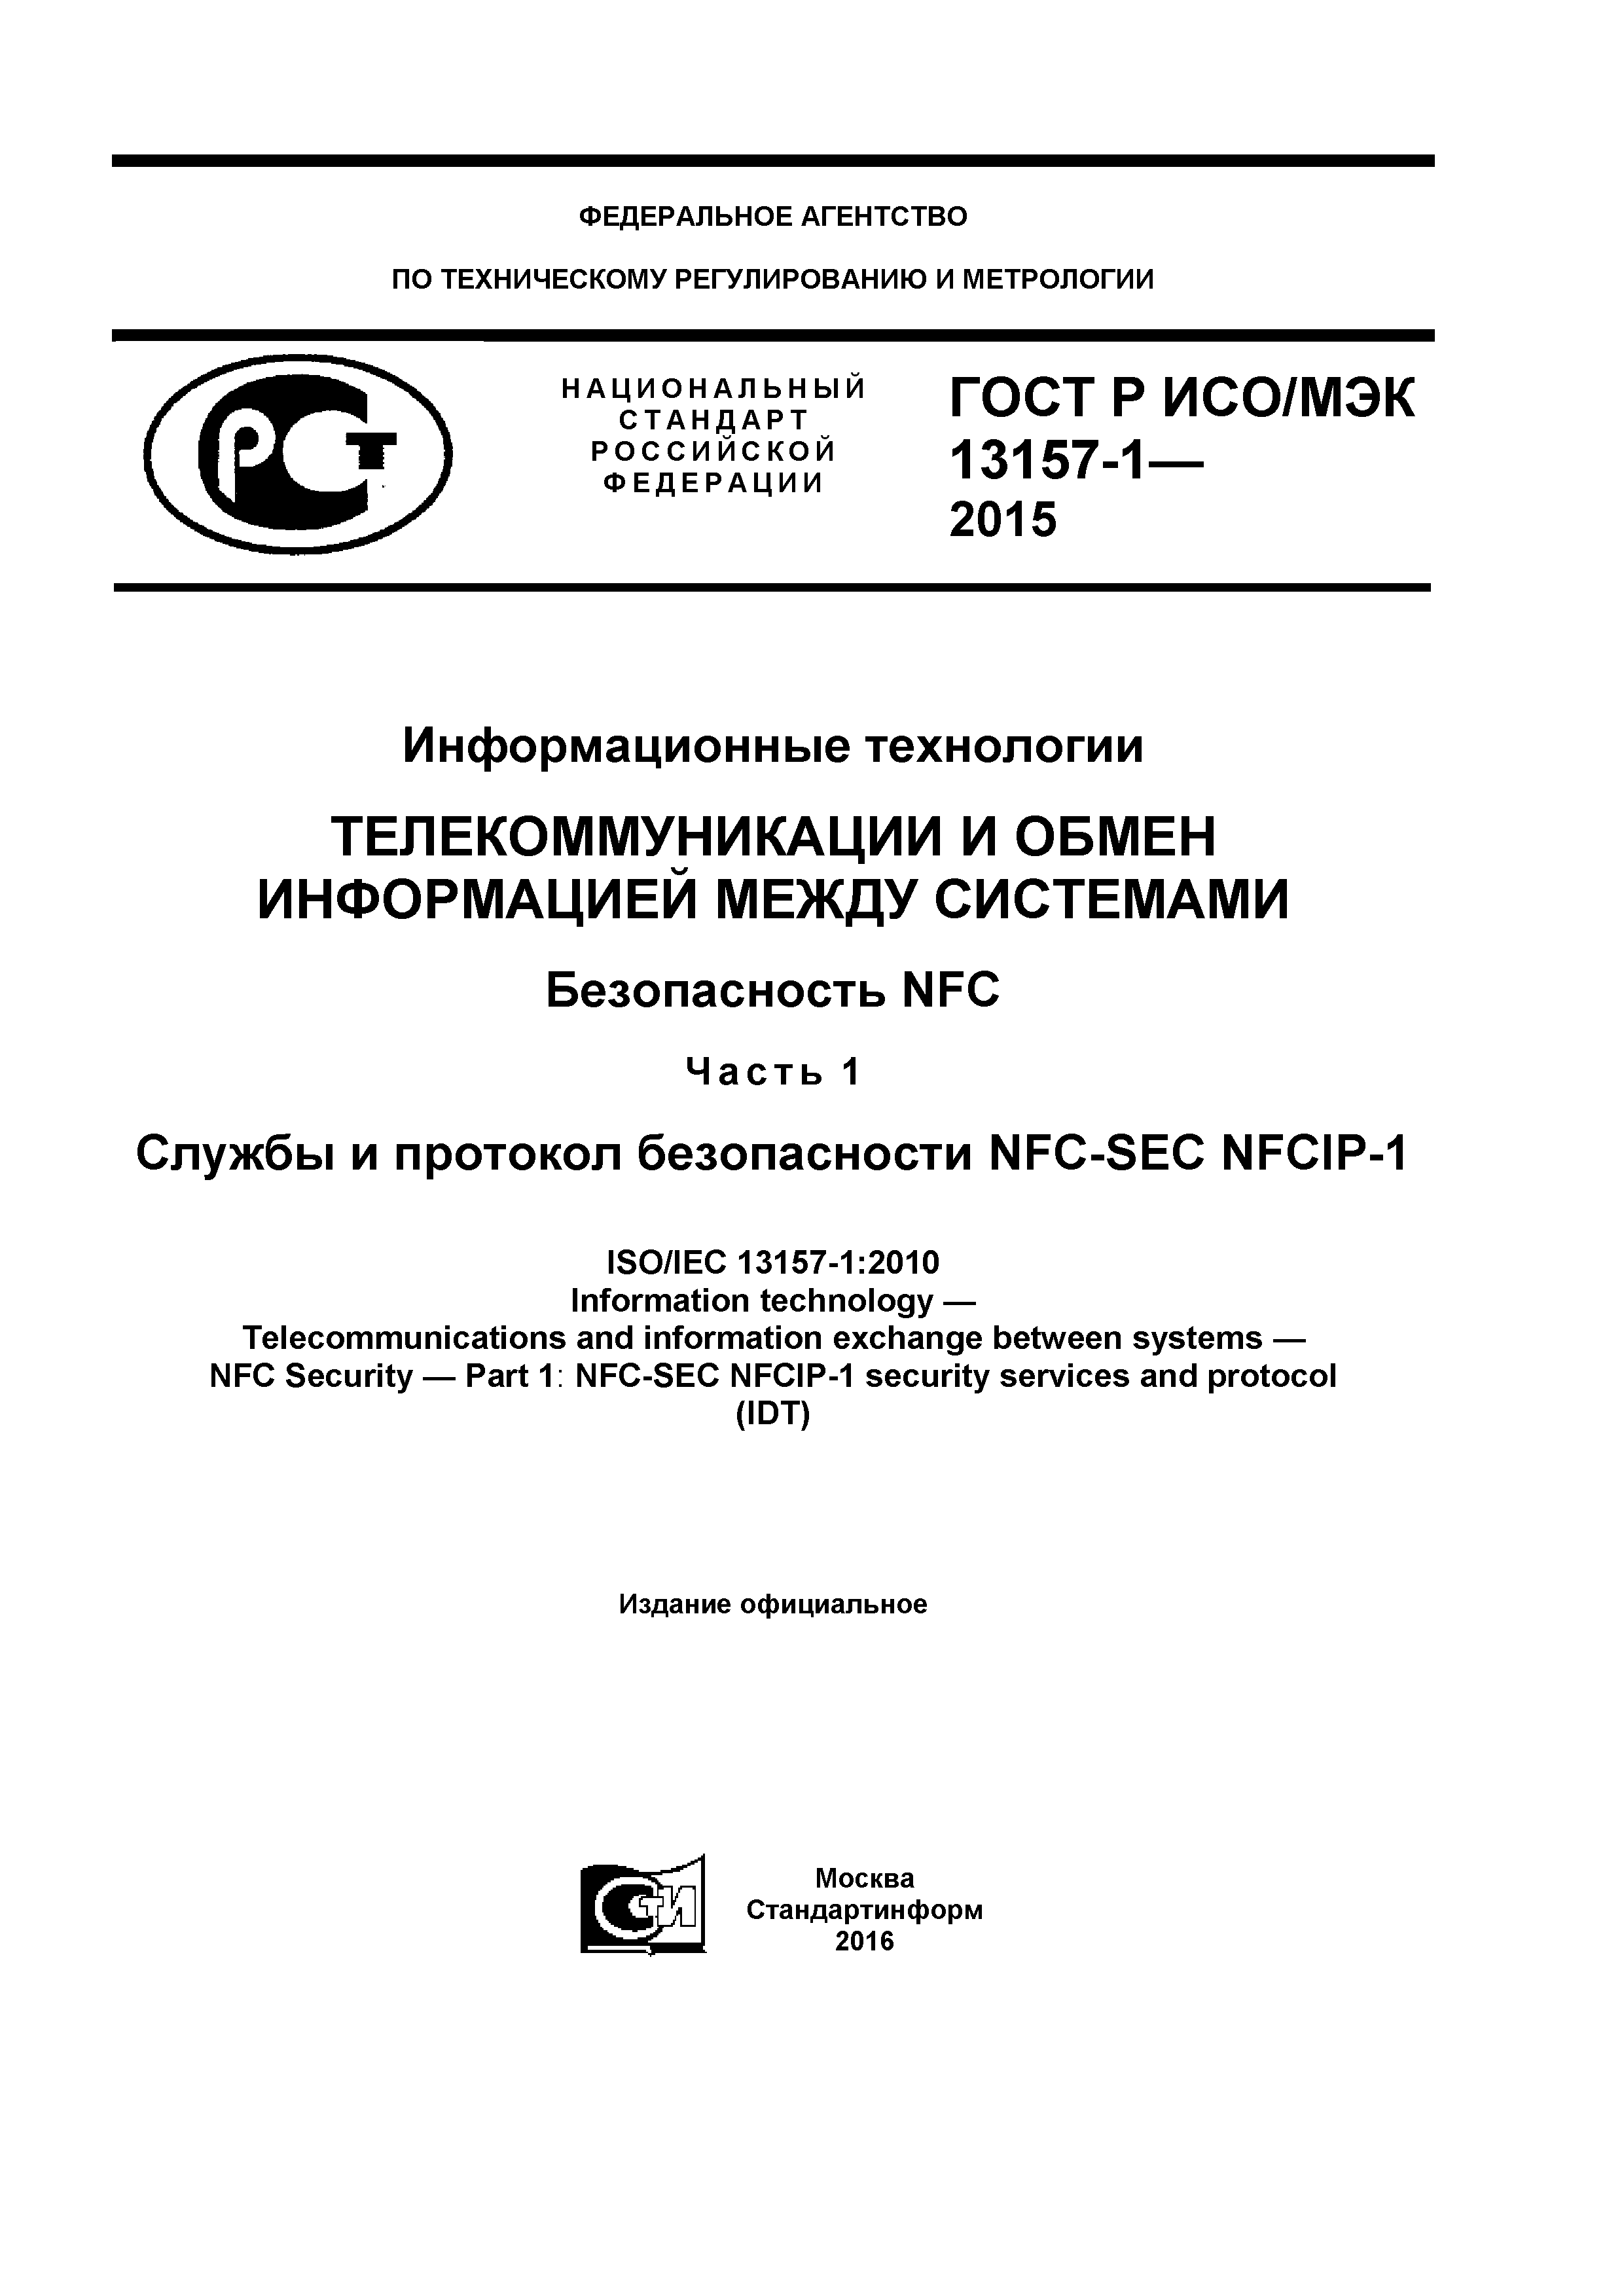 ГОСТ Р ИСО/МЭК 13157-1-2015